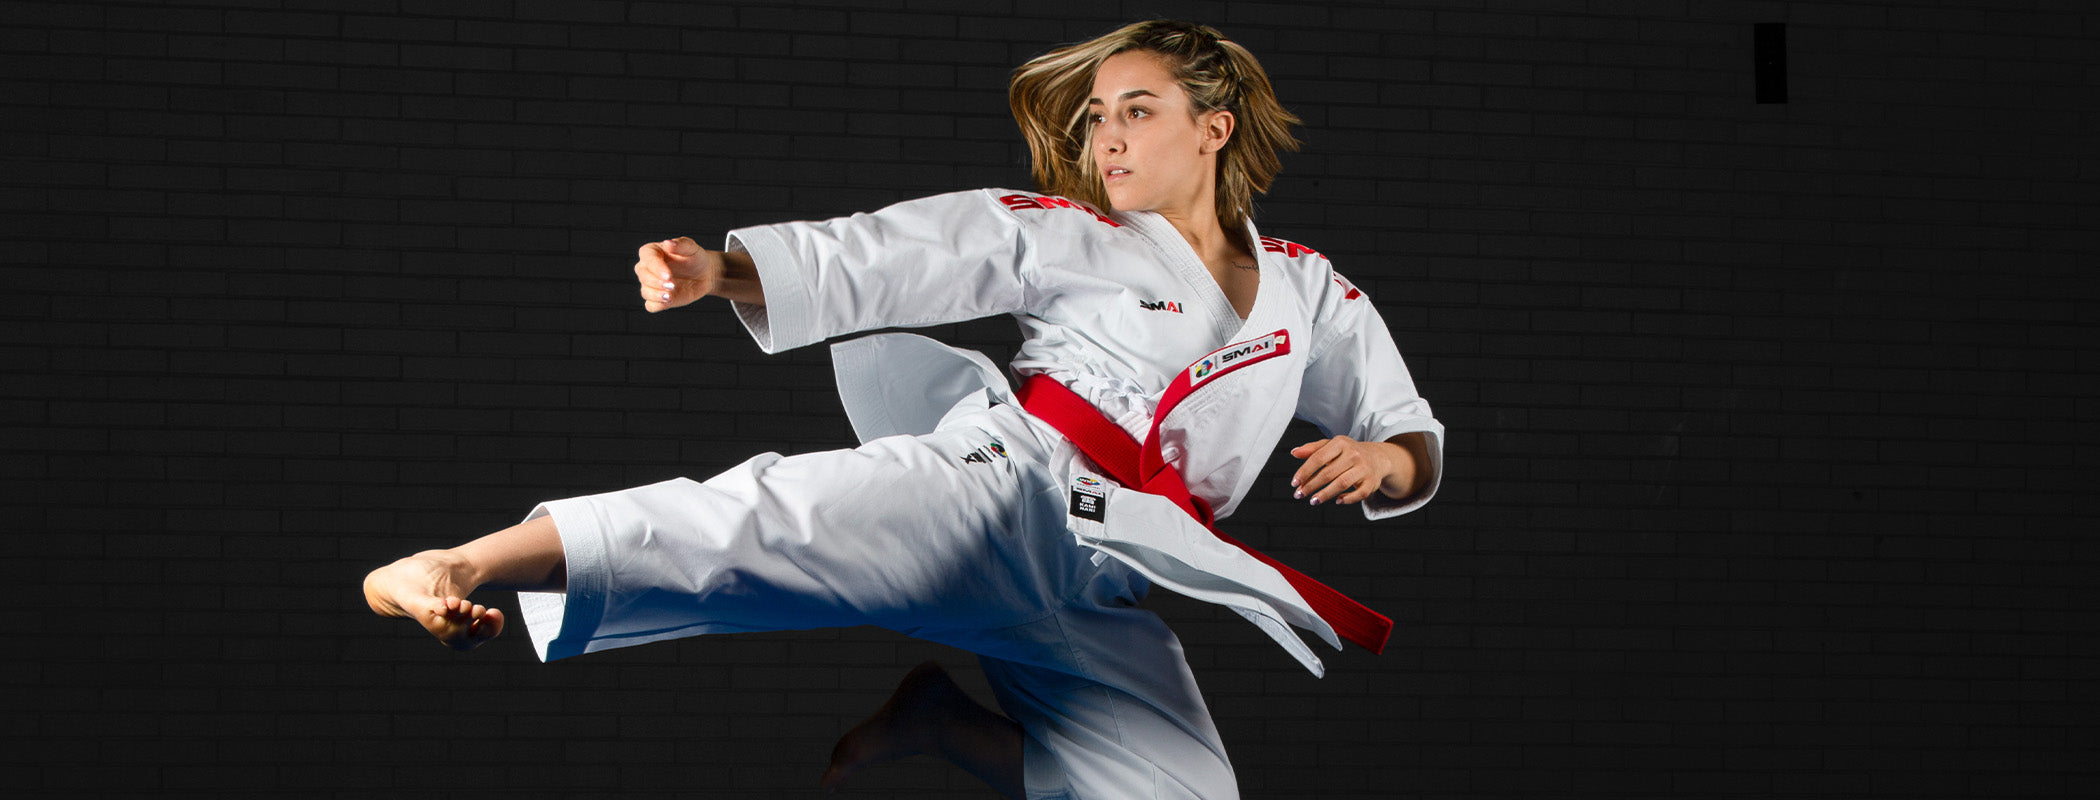 Carola Casale SMAI Karate Italian Athlete